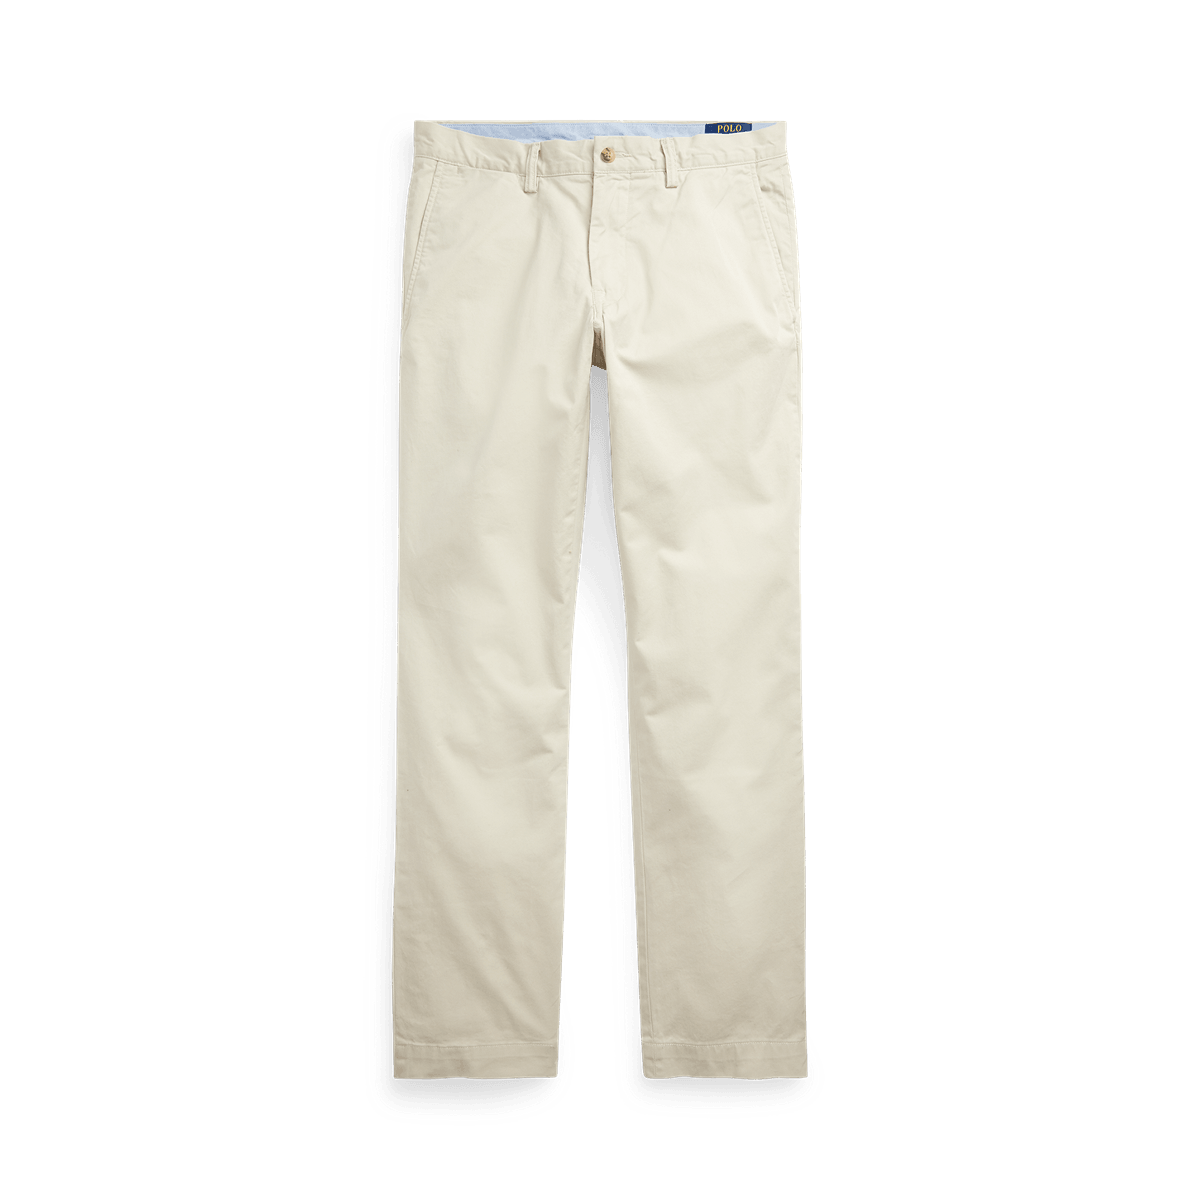 Laflamme- Pantalon chinos en coton - Ralph lauren